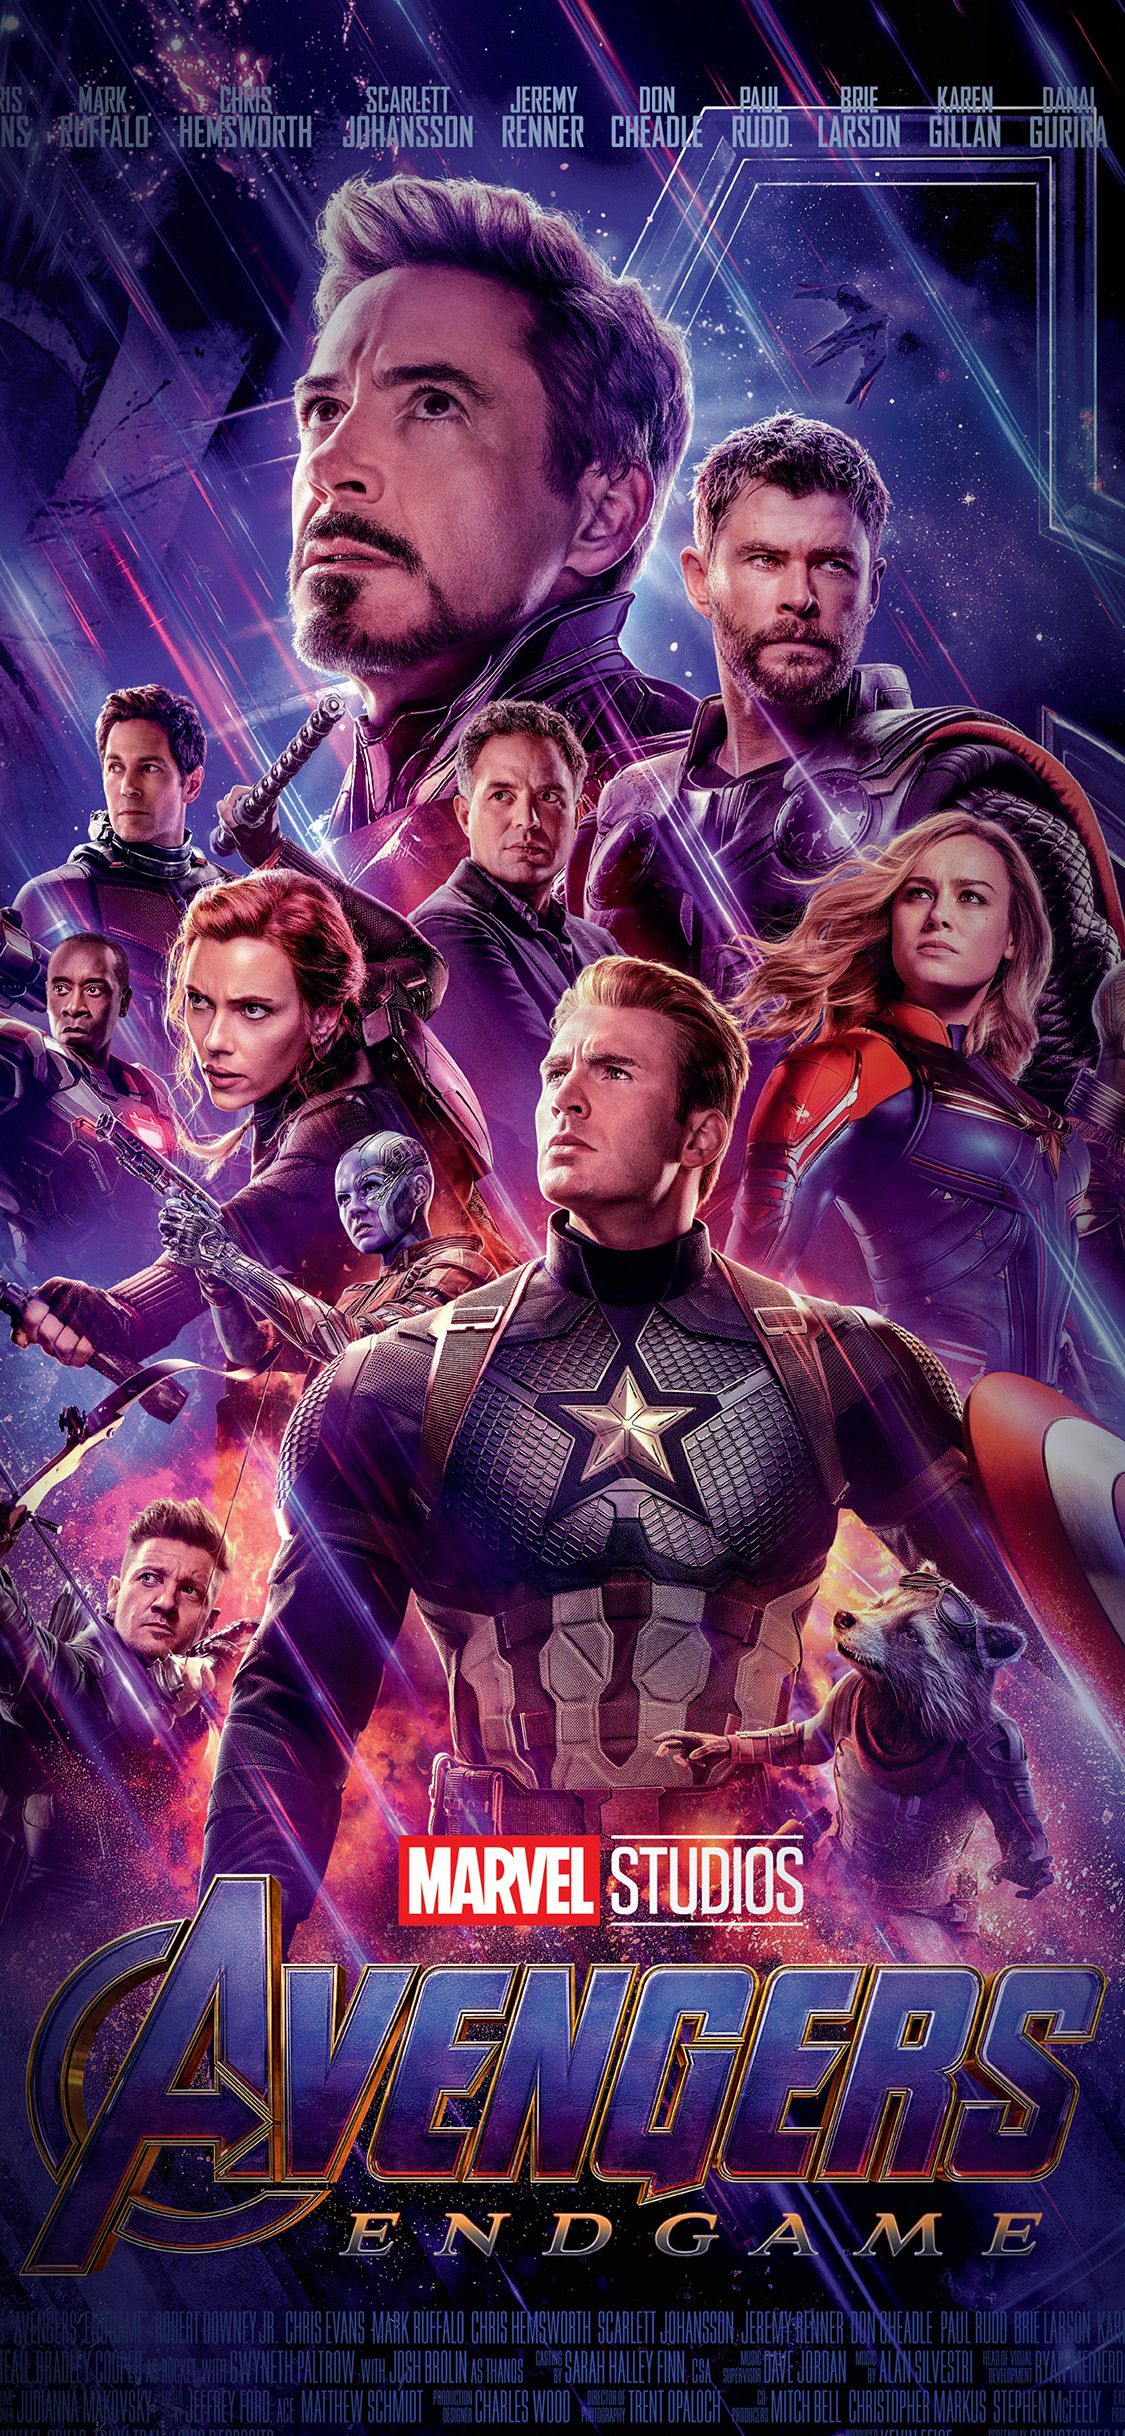 iPhone wallpaper. avengers poster hero endgame